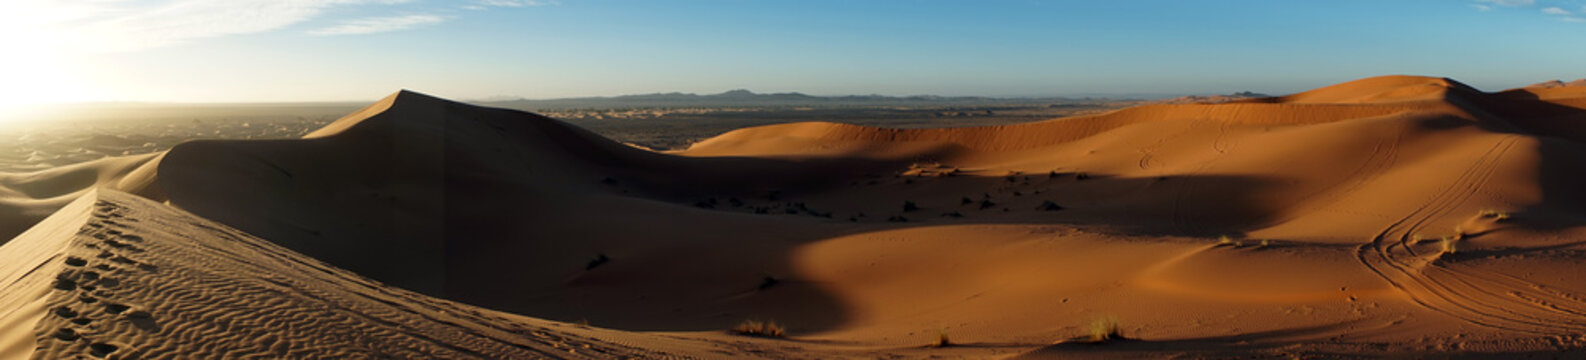 Morning in desert